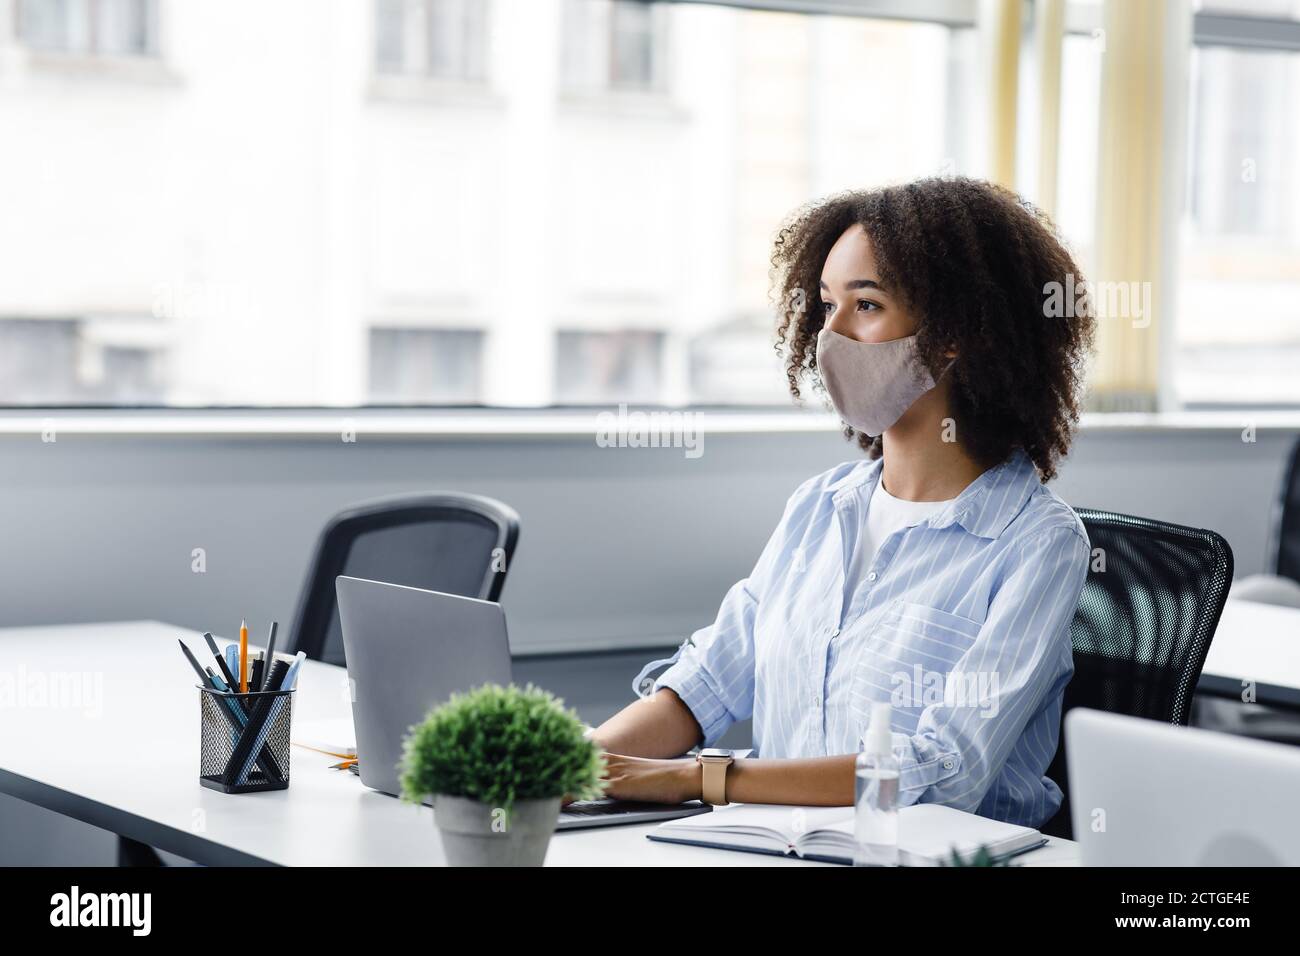 Un lieu de travail où travailler en collaboration. Une dame afro-américaine en masque de protection regarde le client ou un collègue et travaille dans un ordinateur portable, assis à une table avec un ordinateur portable Banque D'Images